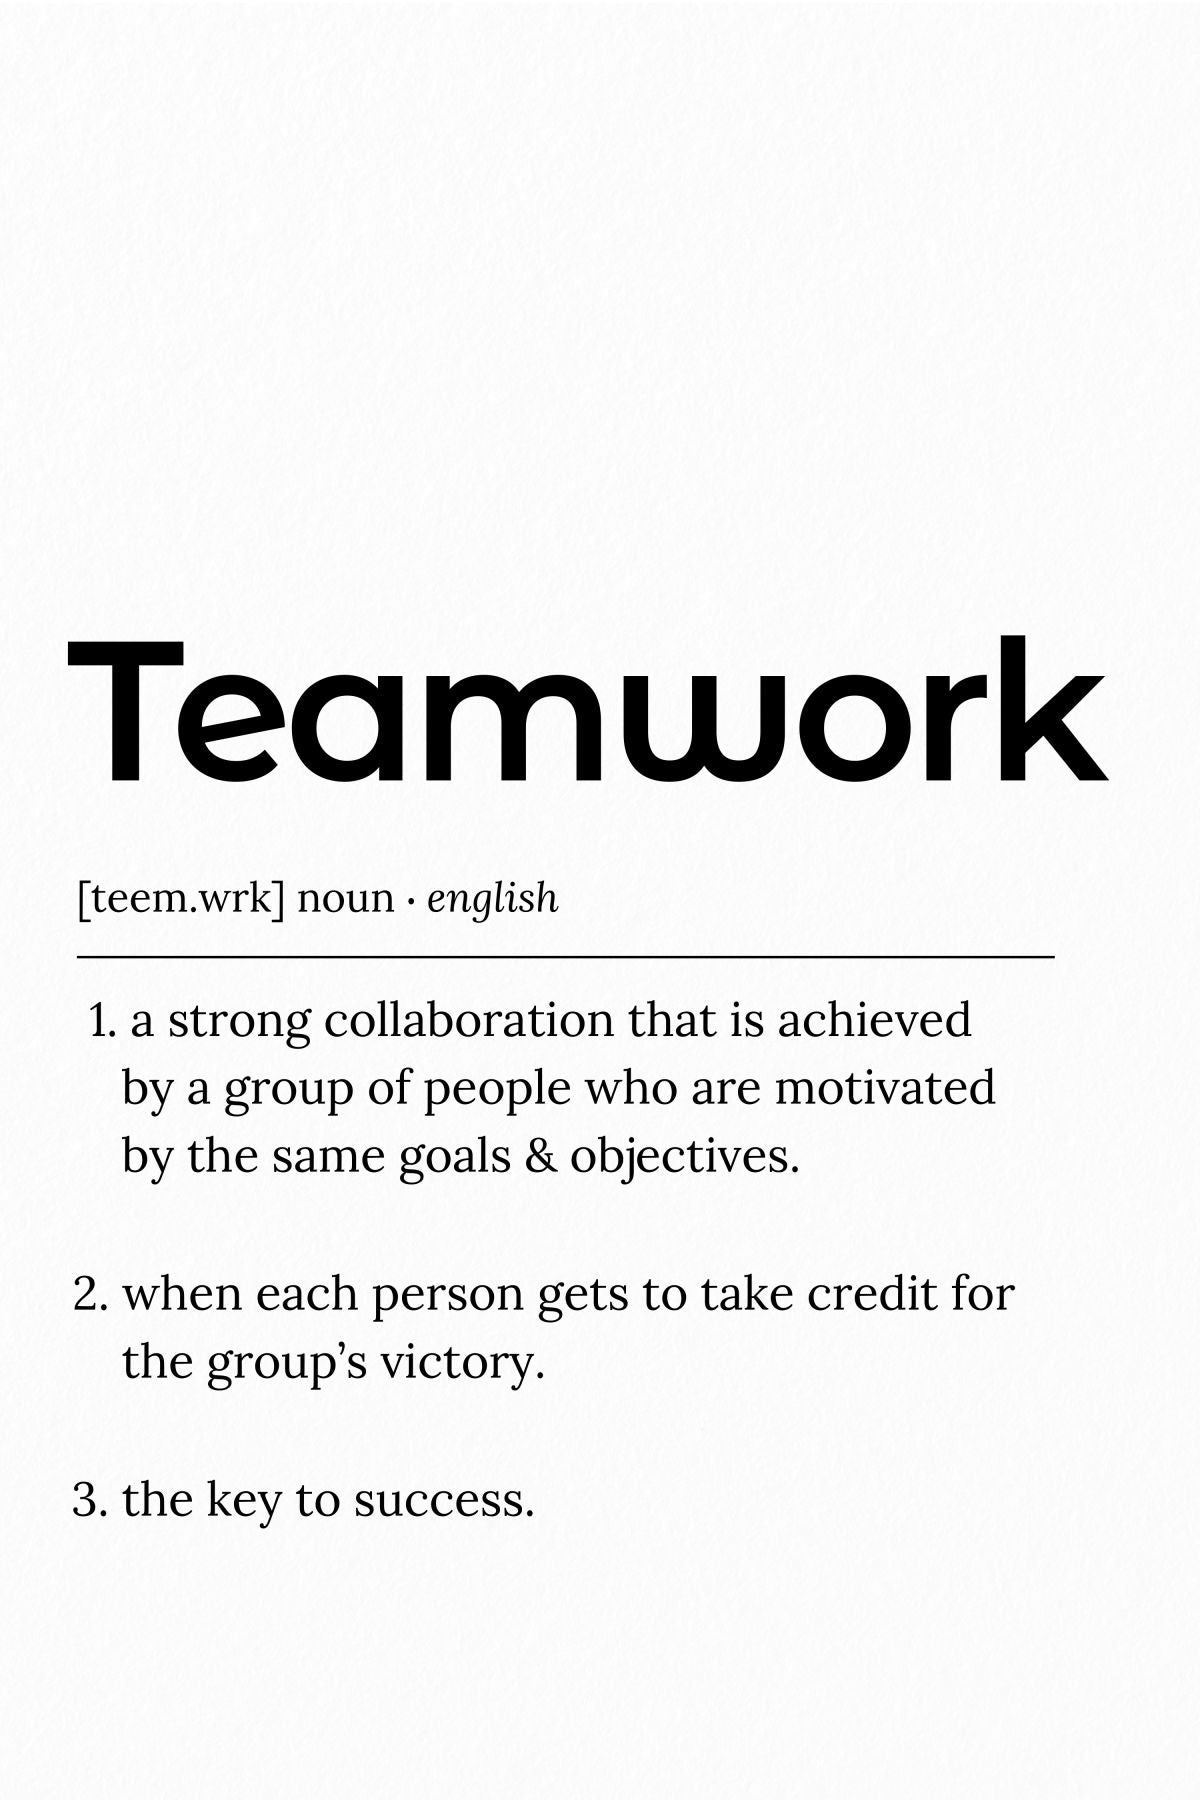 Teamwork Definition